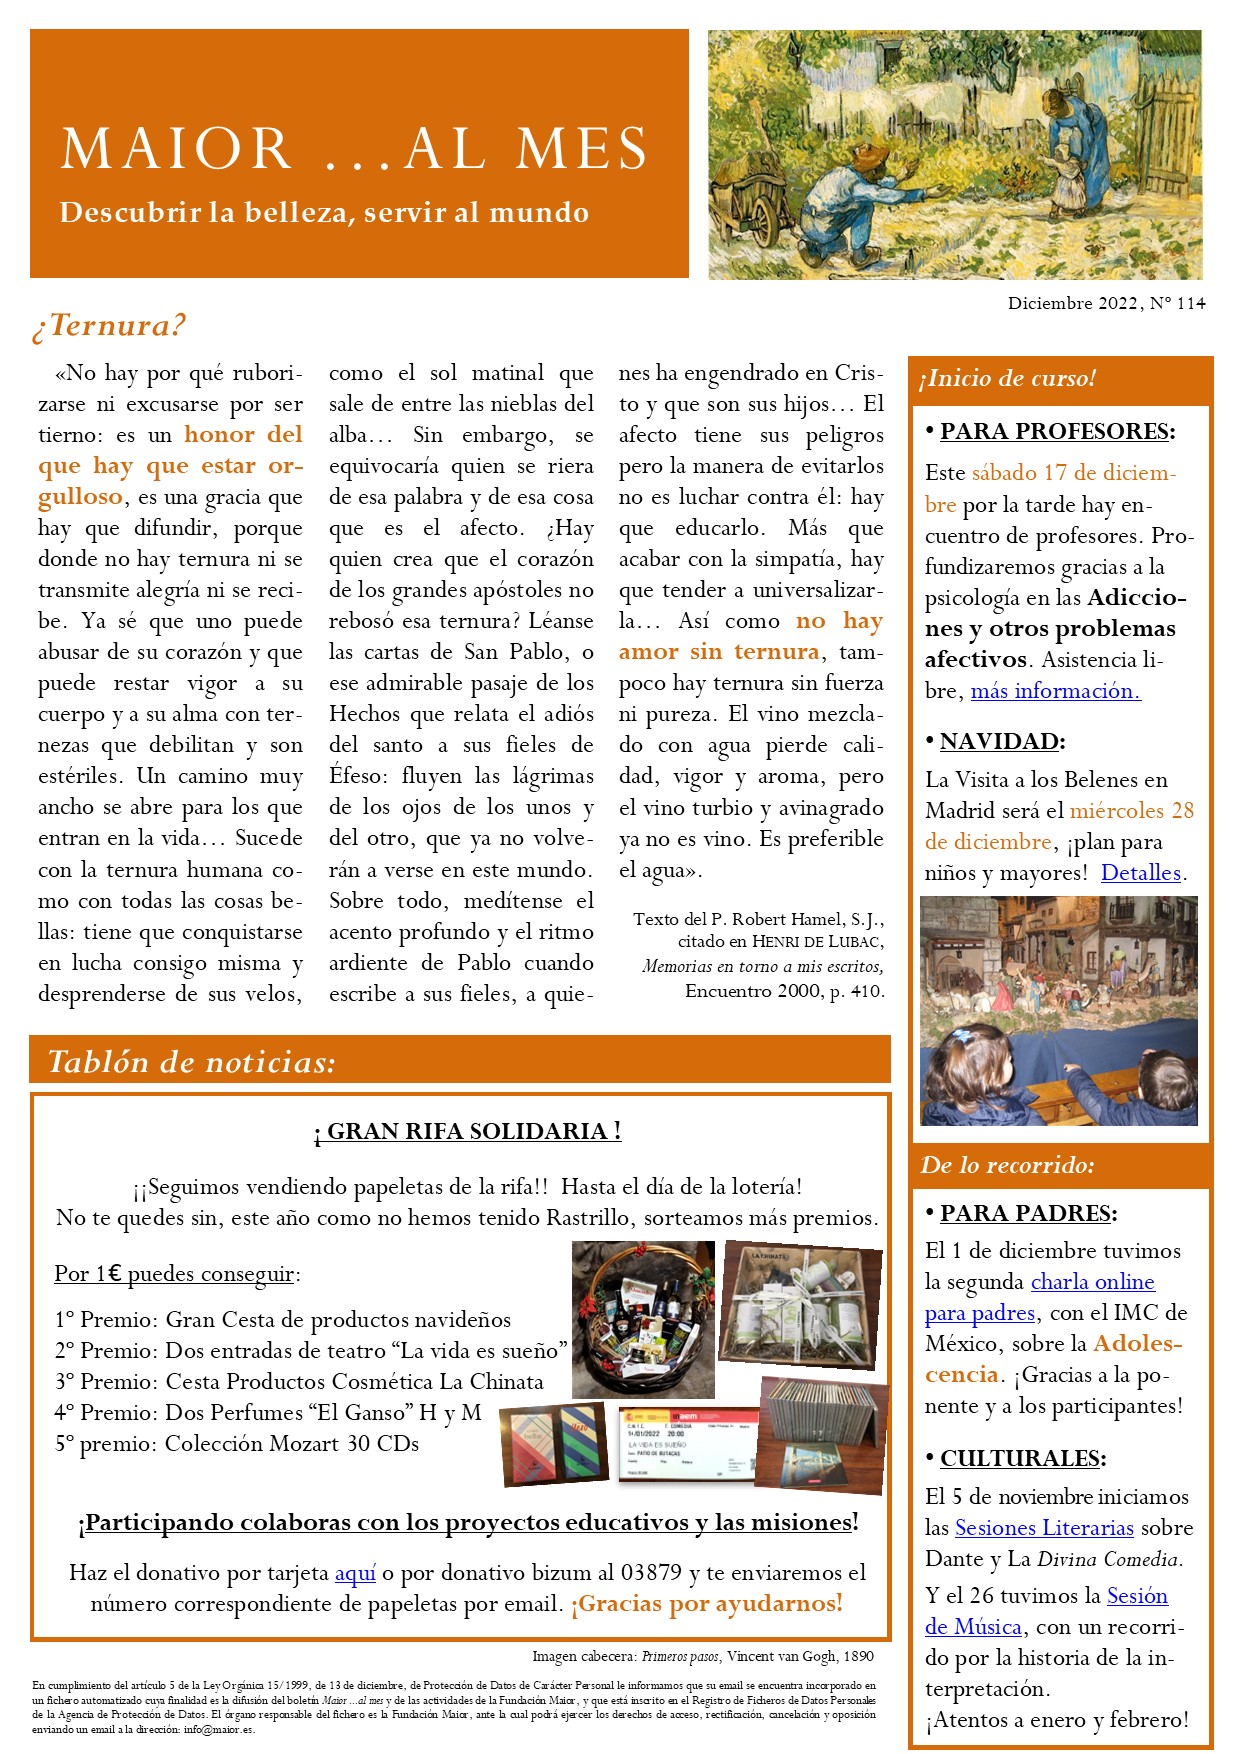 Boletín mensual de noticias y actividades de la Fundación Maior. Edición de diciembre 2022